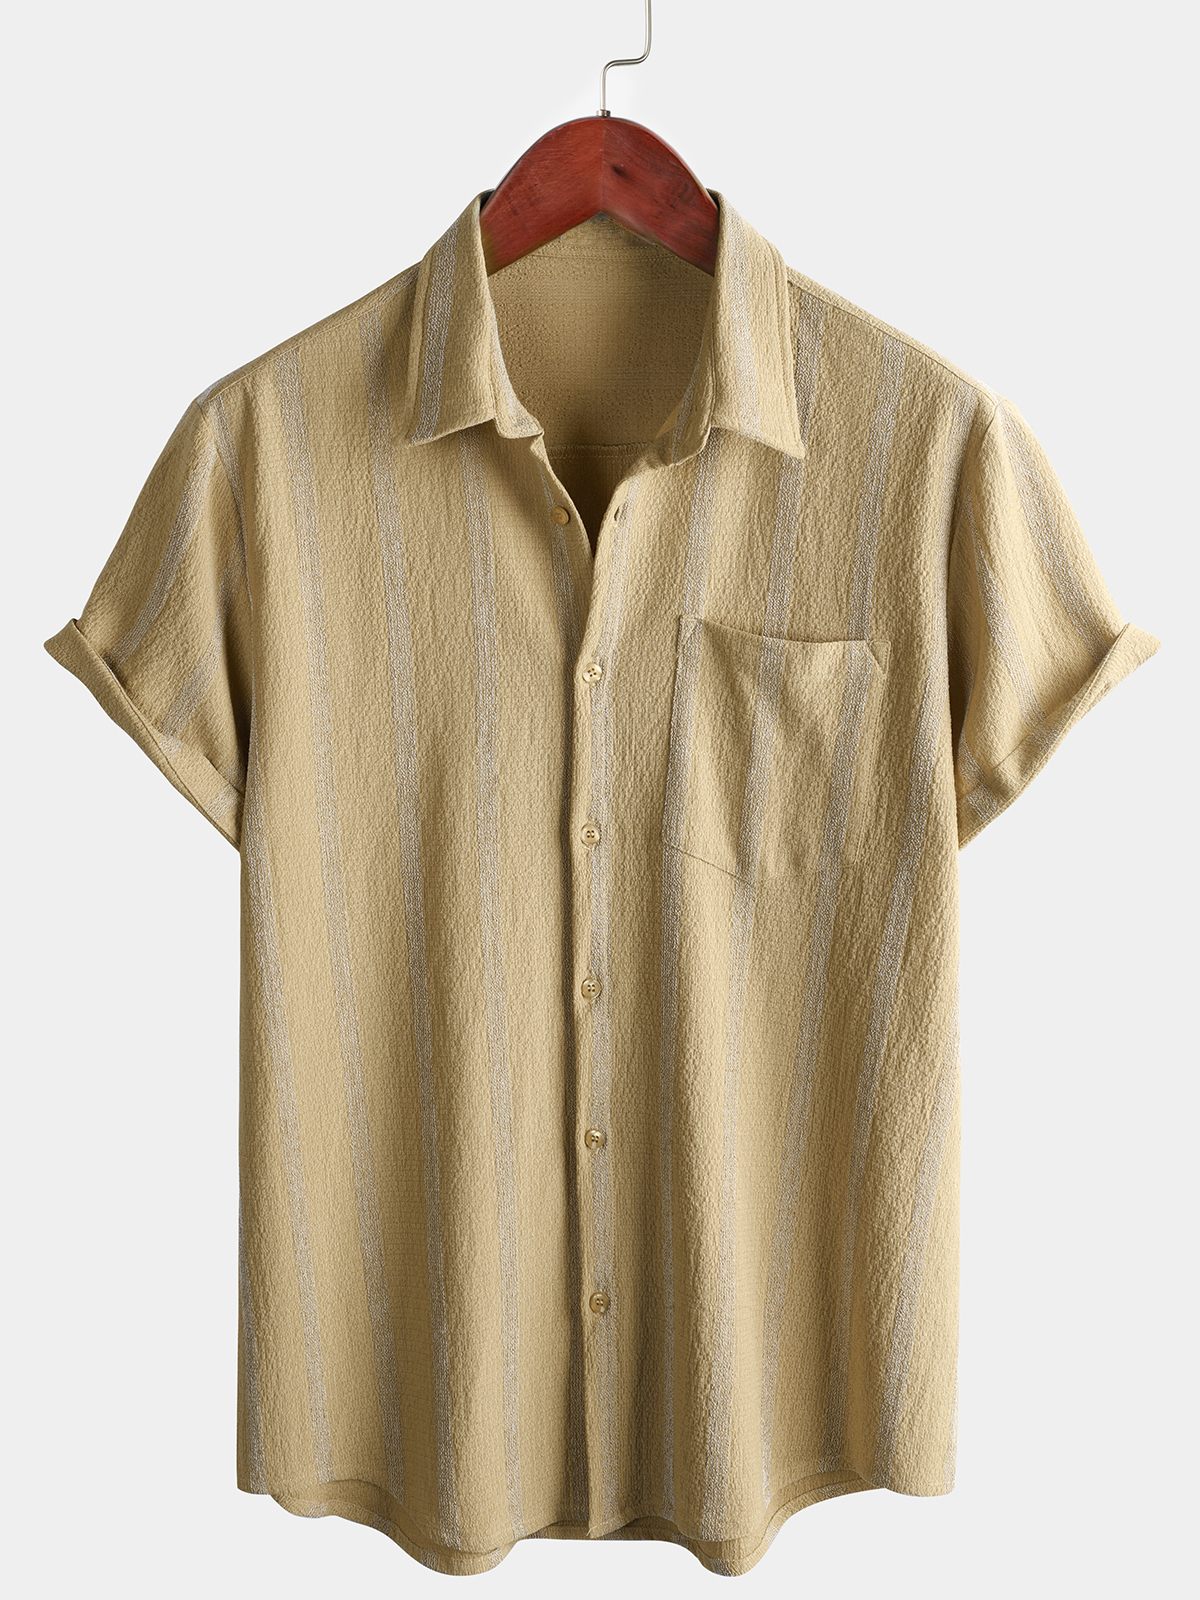 Men's Summer Striped Pocket Button Up Short Sleeve Vintage Beach Hawaiian Shirt